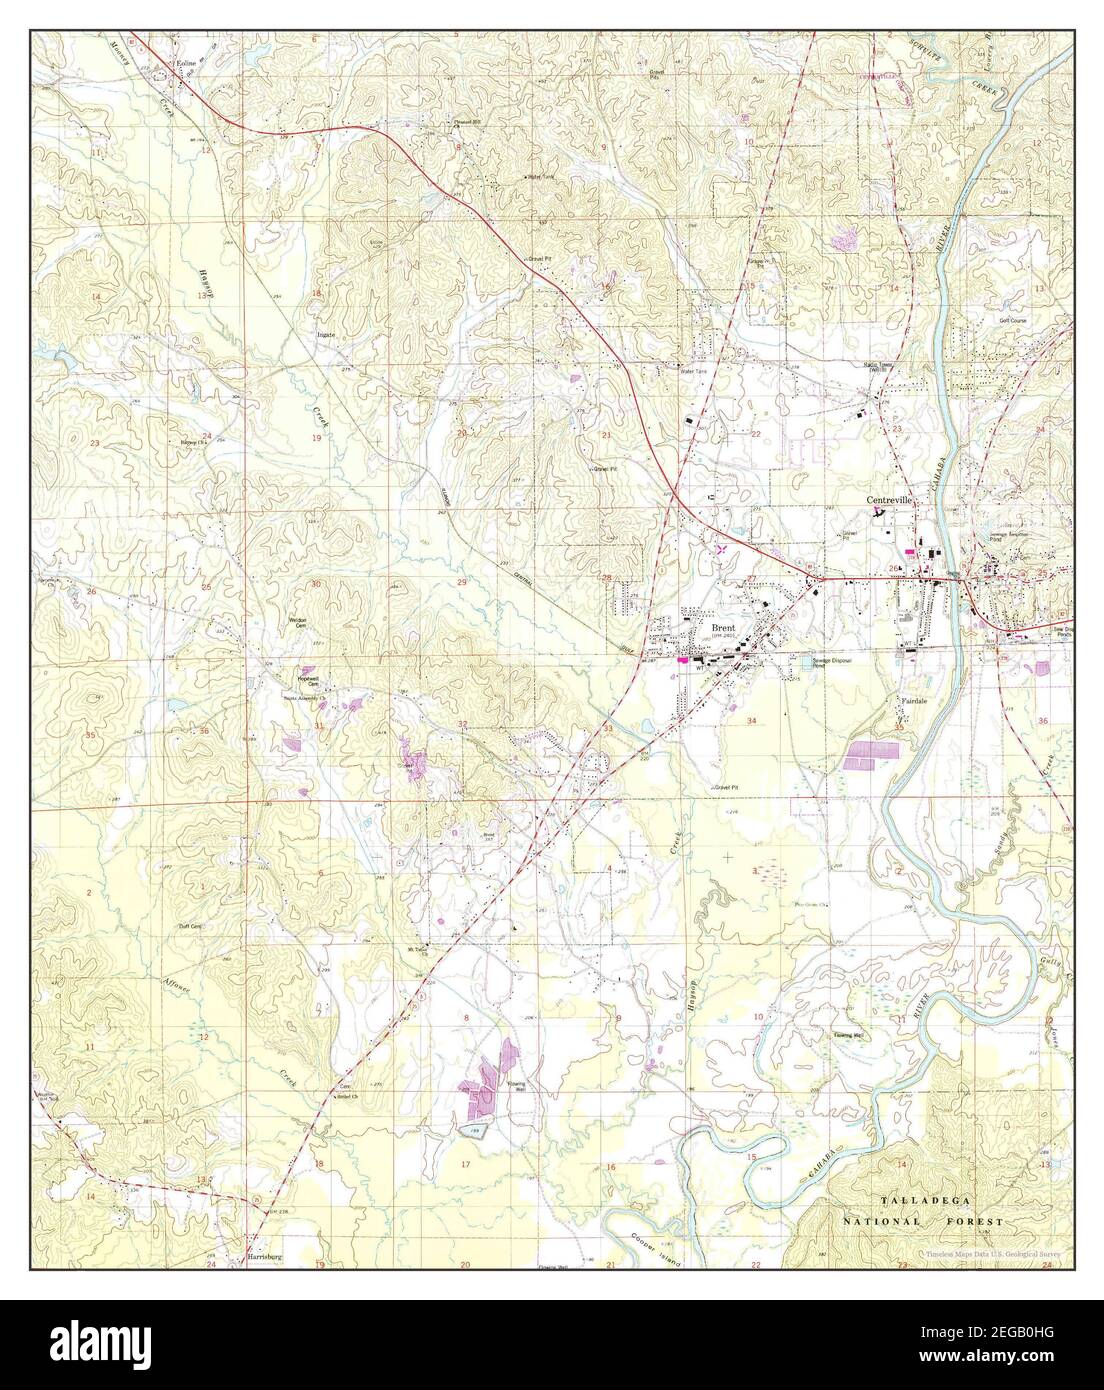 Centerville West, Alabama, carte 1980, 1:24000, États-Unis d'Amérique par Timeless Maps, données U.S. Geological Survey Banque D'Images